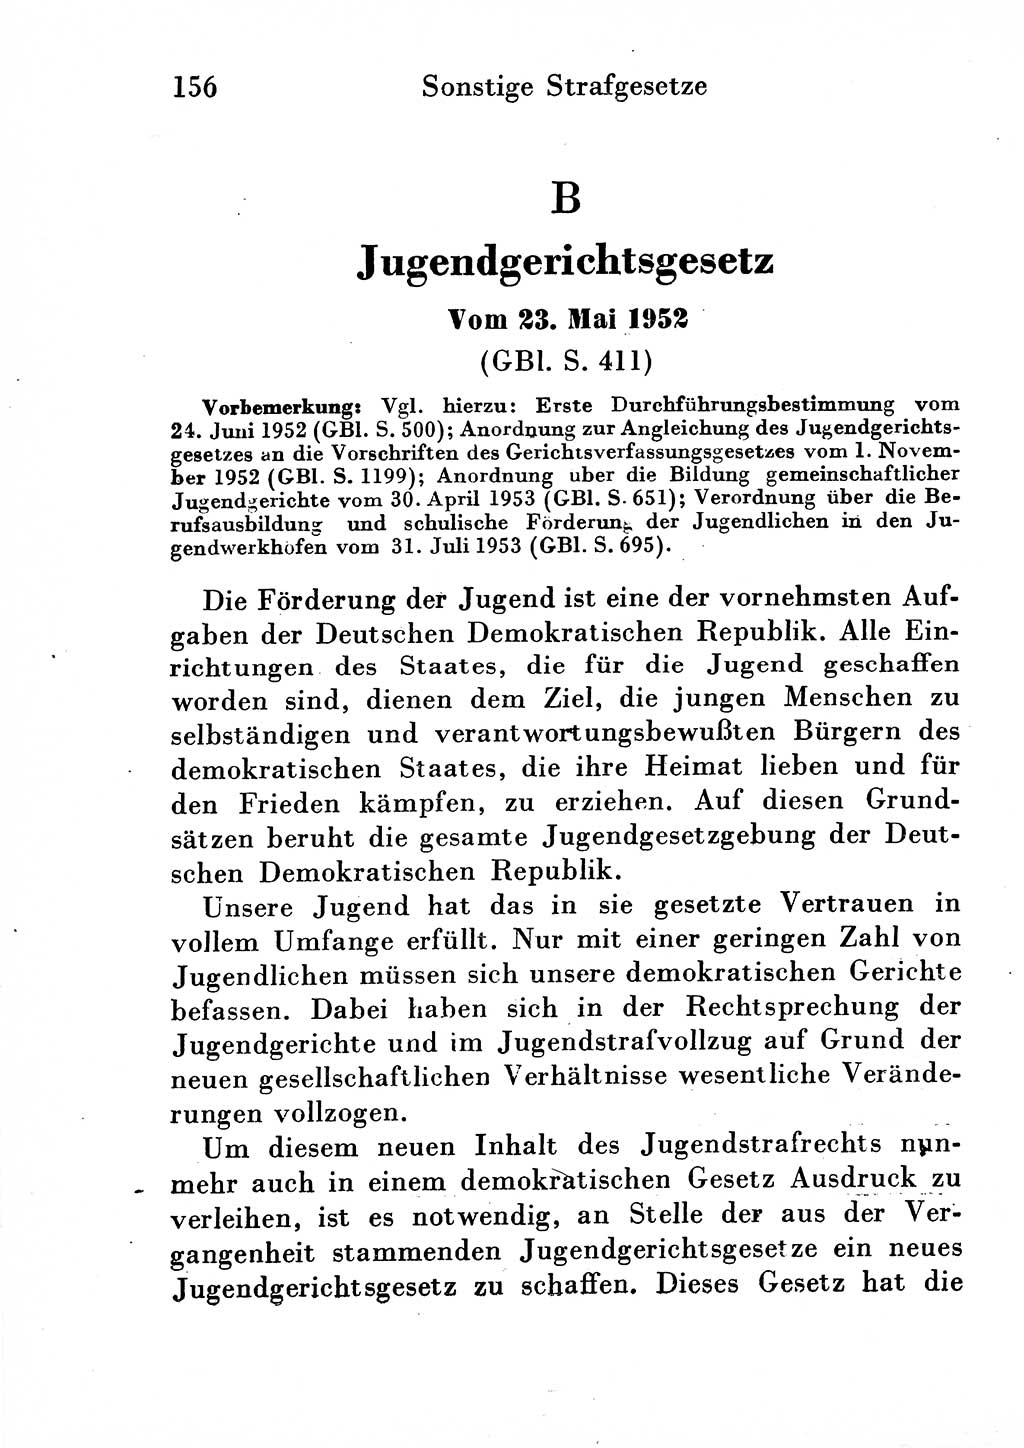 Strafgesetzbuch (StGB) und andere Strafgesetze [Deutsche Demokratische Republik (DDR)] 1954, Seite 156 (StGB Strafges. DDR 1954, S. 156)